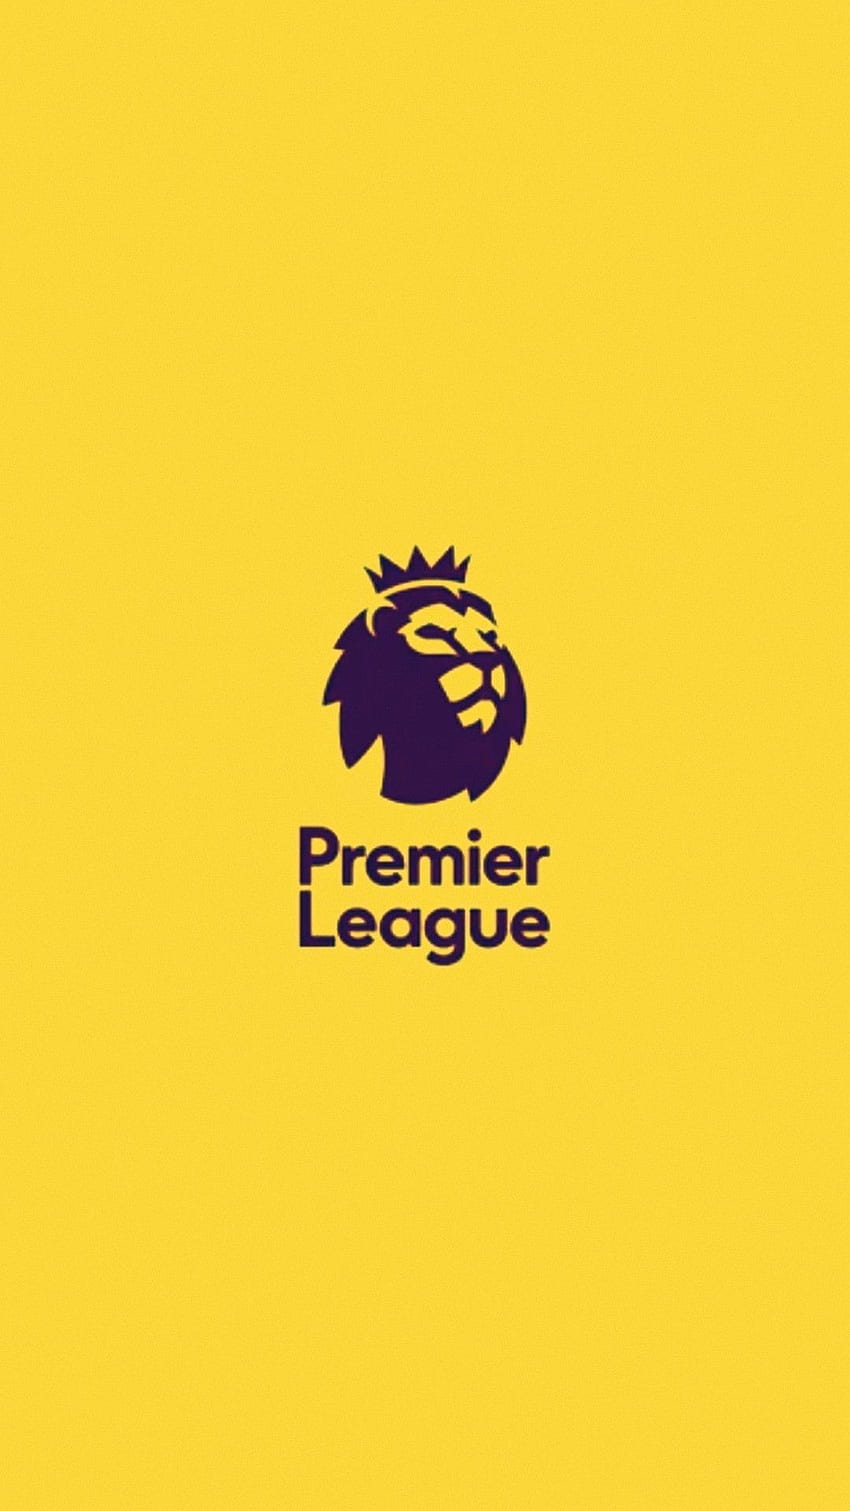 Idéias de logotipo da liga de futebol. liga de futebol, futebol, liga, Premier League LOGO Papel de parede de celular HD